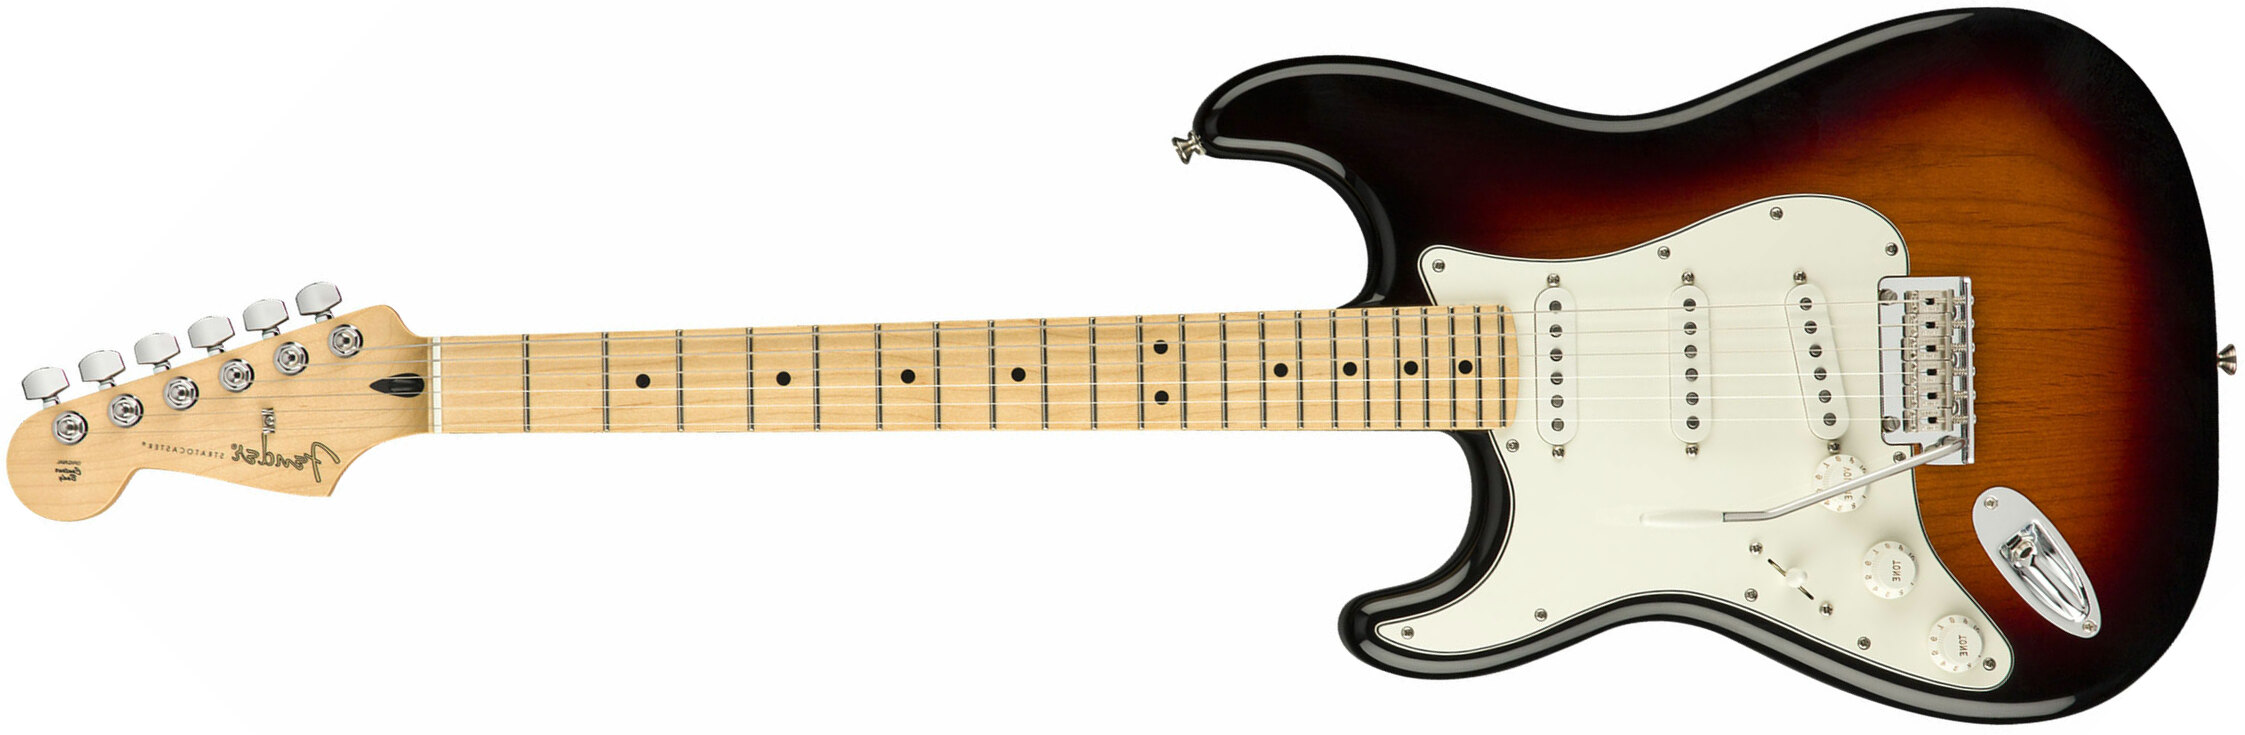 Fender Strat Player Lh Gaucher Mex Sss Mn - 3-color Sunburst - Guitarra electrica para zurdos - Main picture